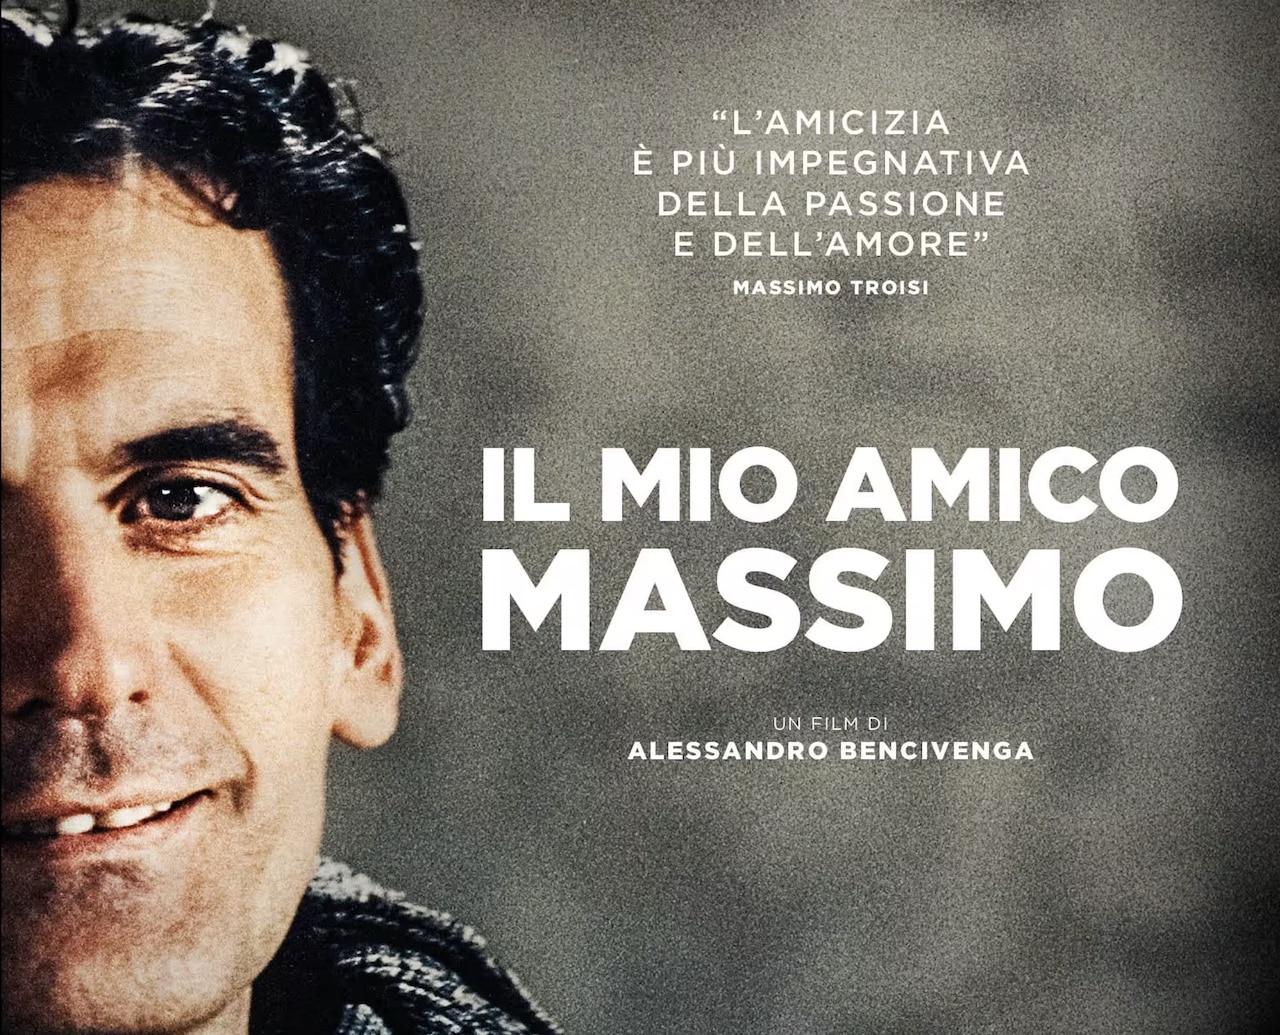 Il mio amico Massimo: il trailer del docufilm dedicato a Massimo Troisi thumbnail